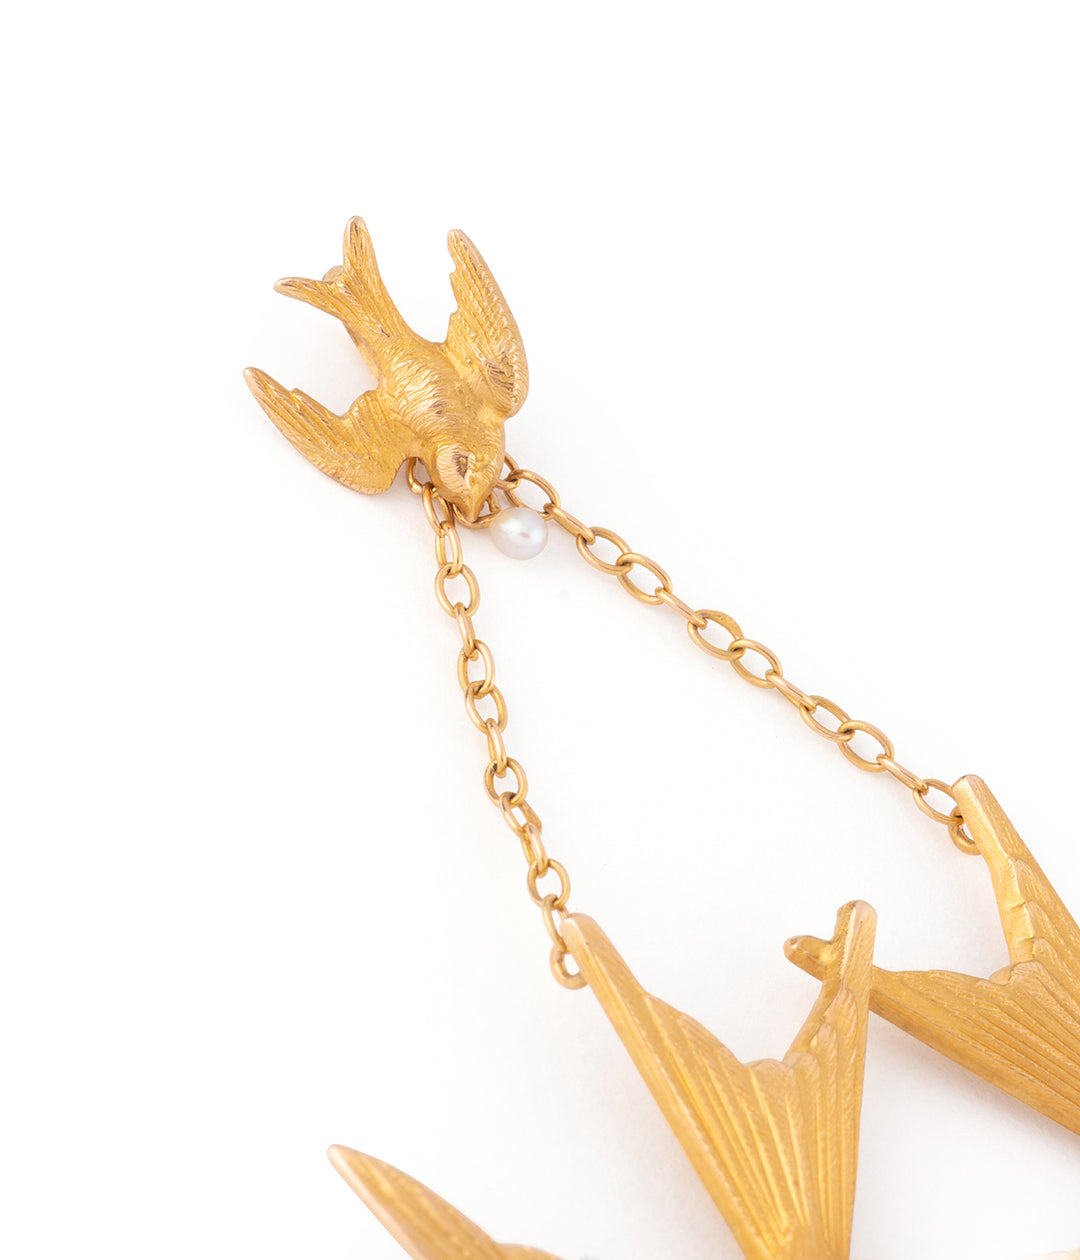 Antique gold pendant swallow "Onni" - Caillou Paris